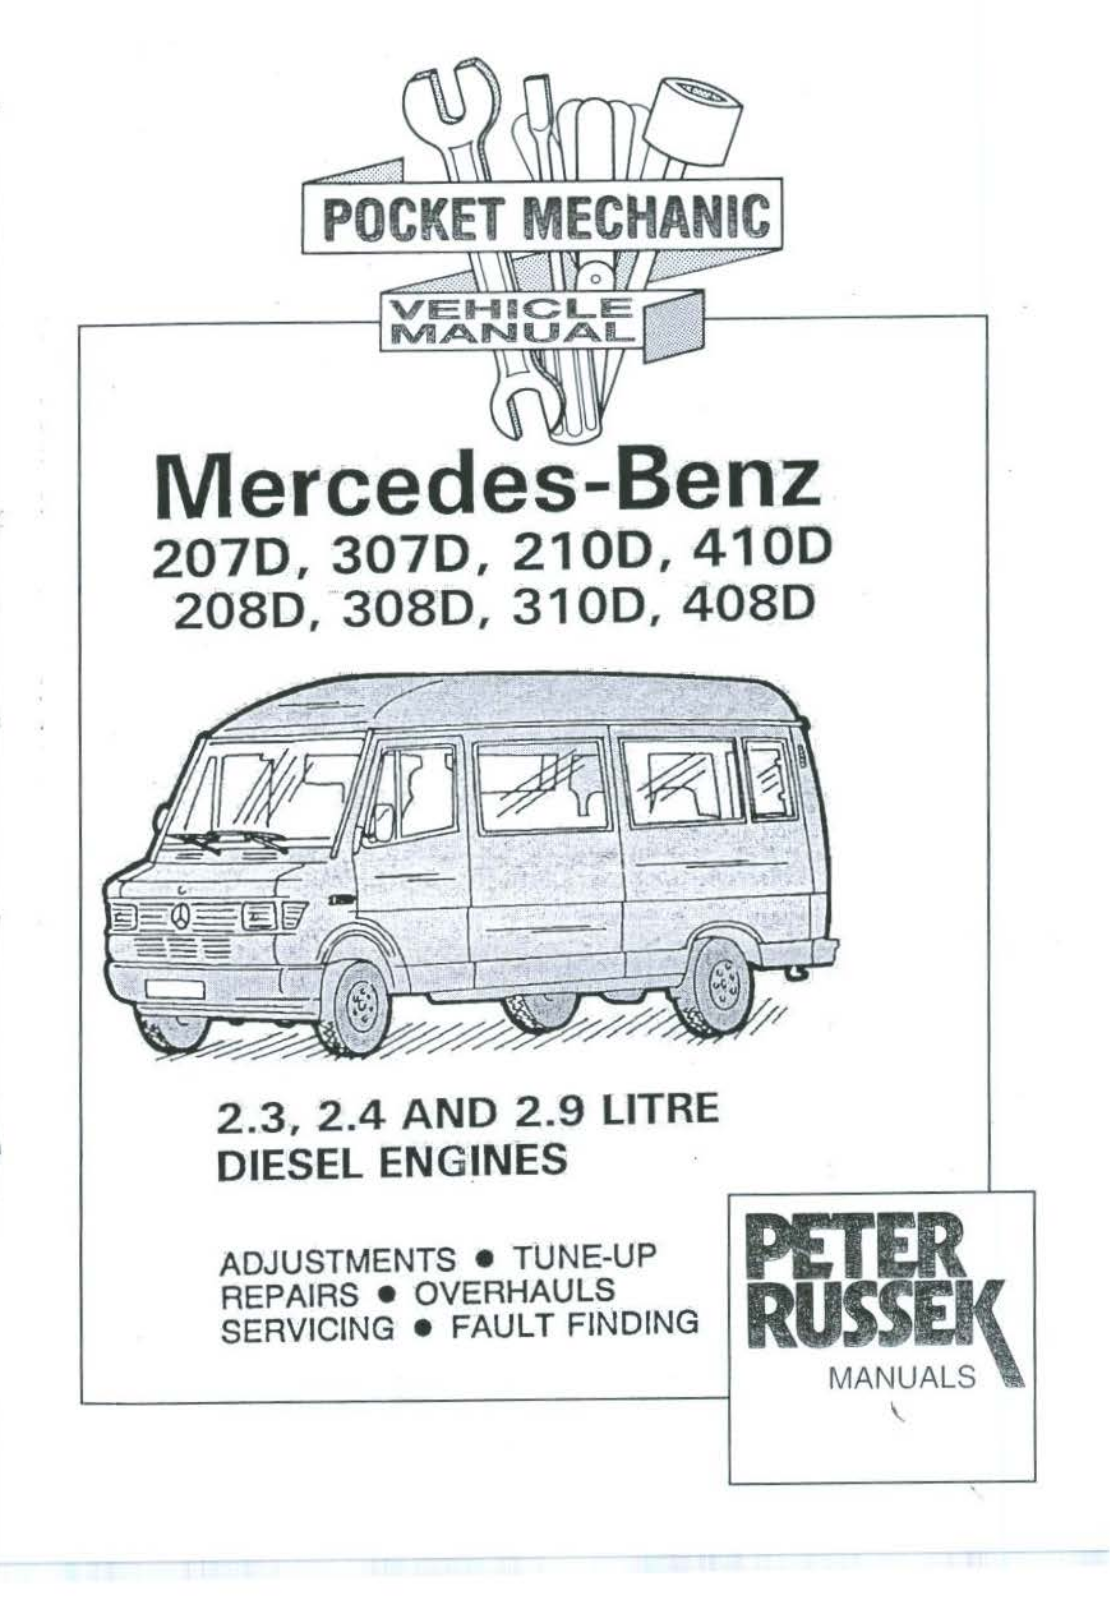 Mercedes 207D, 208D, 210D, 307D, 308D Service Manual